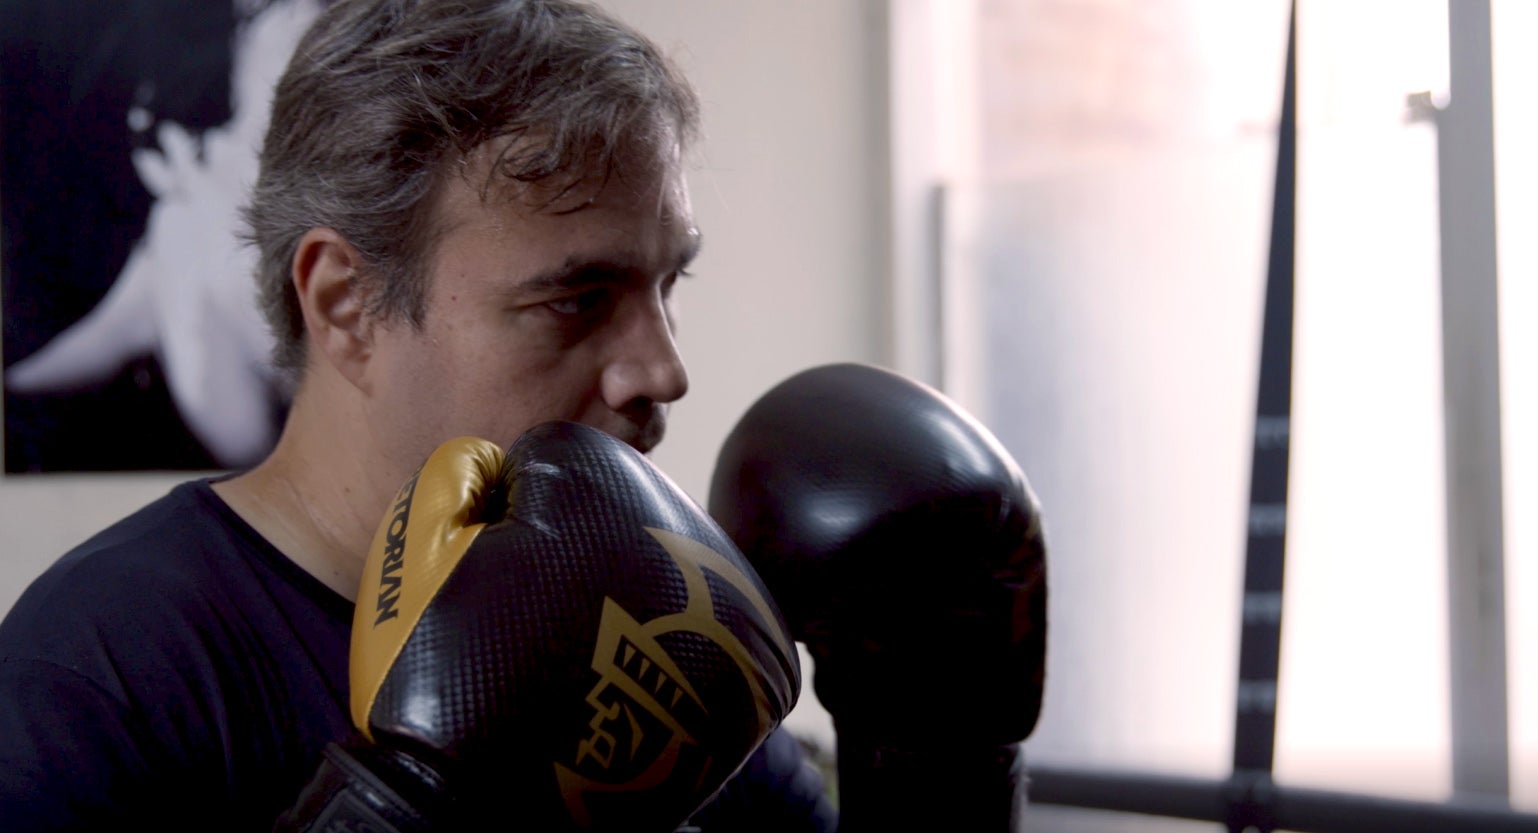 Fabiano boxing at a Brazilian studio in the city.